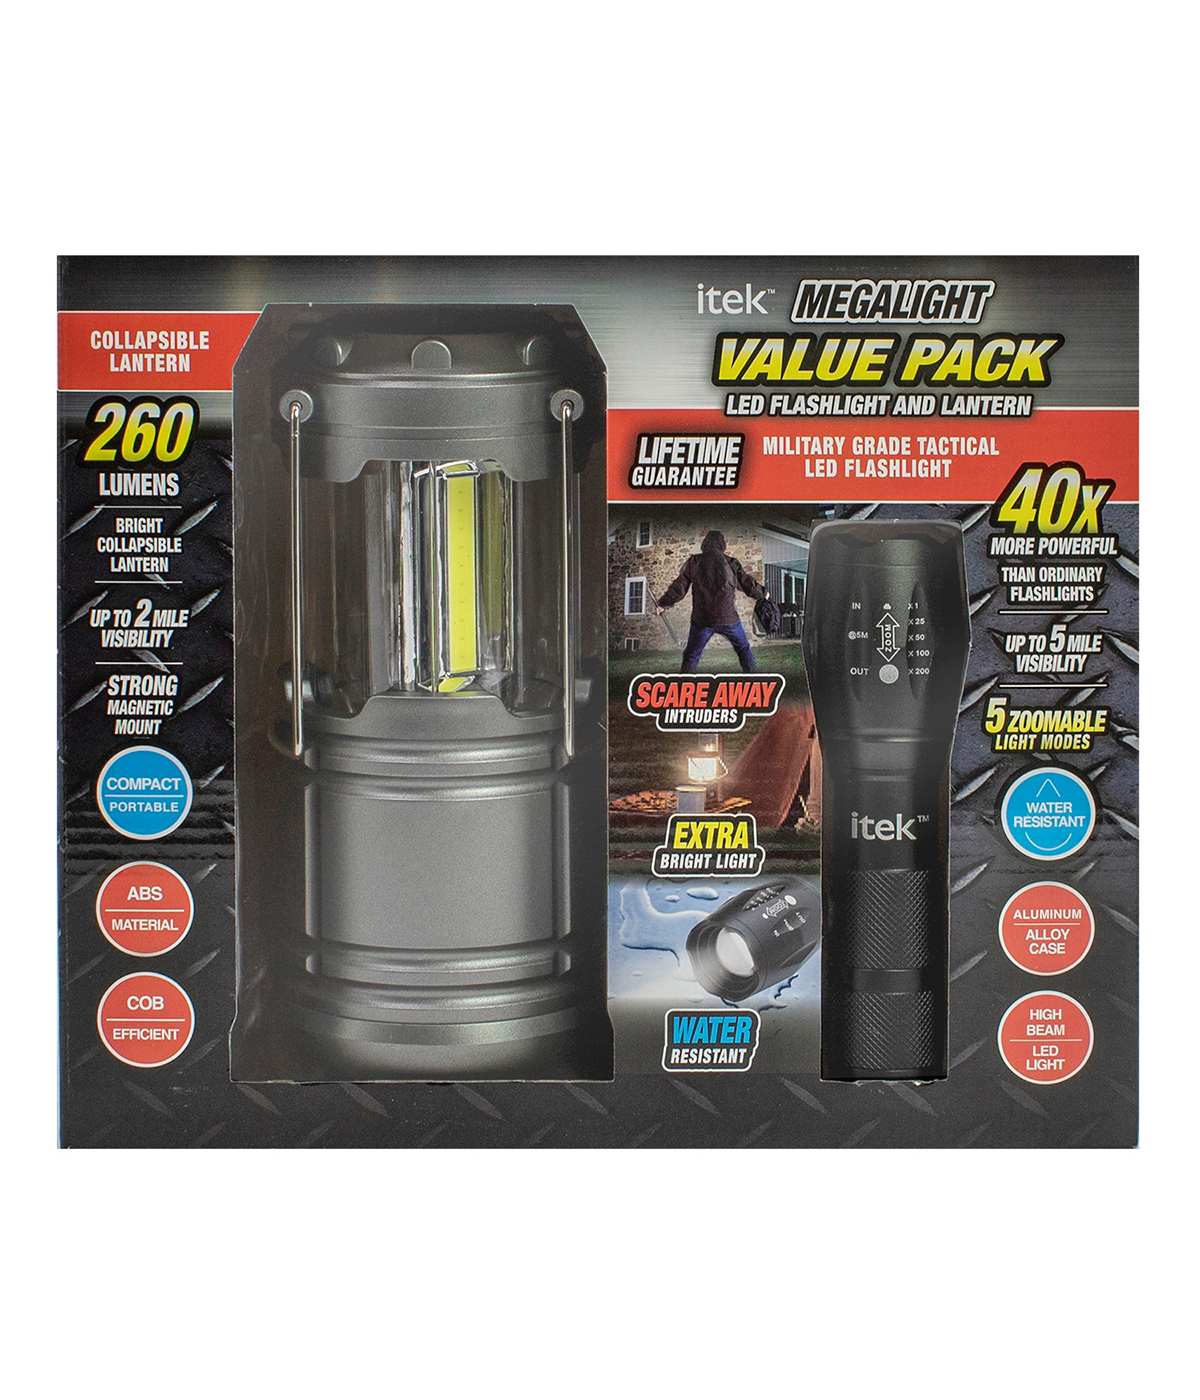 Itek Megalight LED Flashlight & Lantern; image 1 of 2